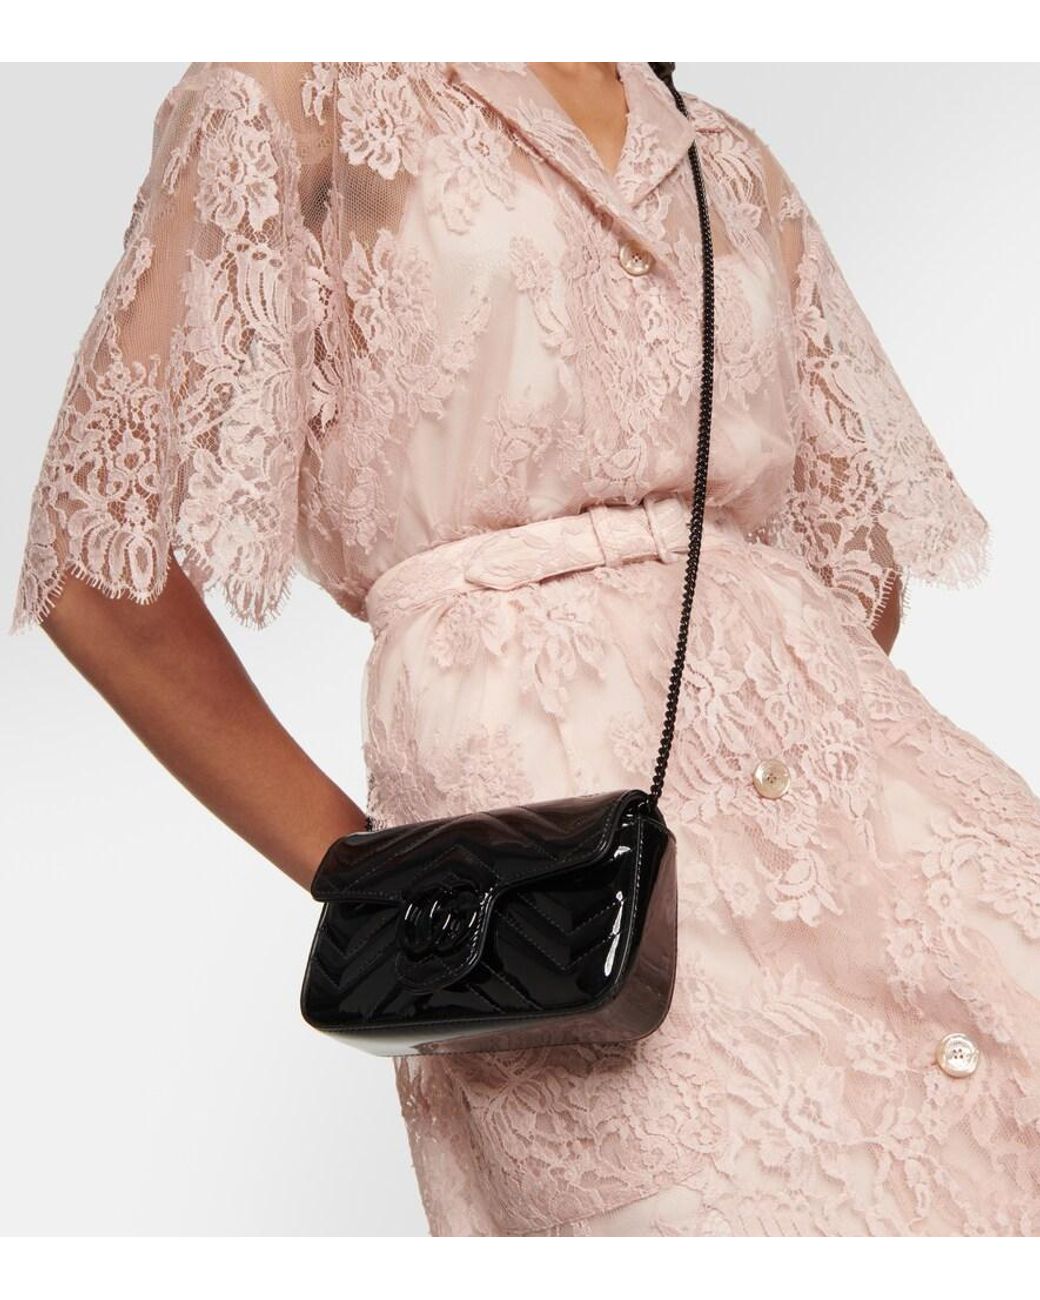 Gucci GG Marmont Patent Super Mini Bag in Black | Lyst